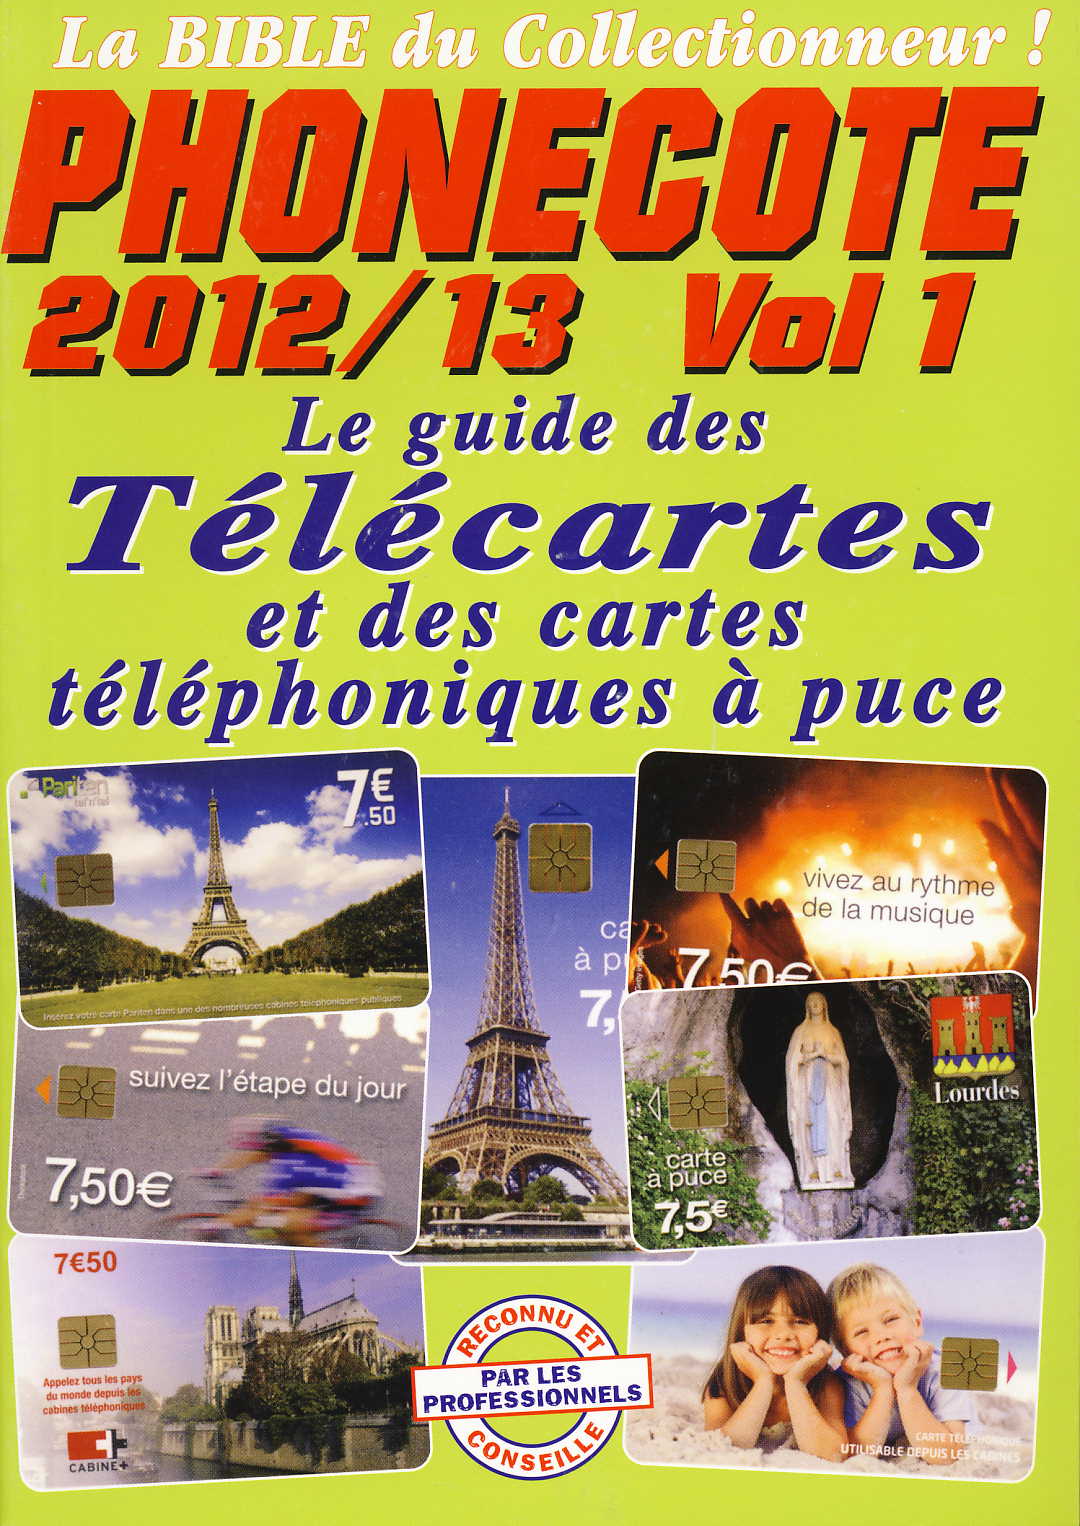 SARL INFOPUCE Phonecote 2012/13 Vol. 1 Le guide des Télécartes e